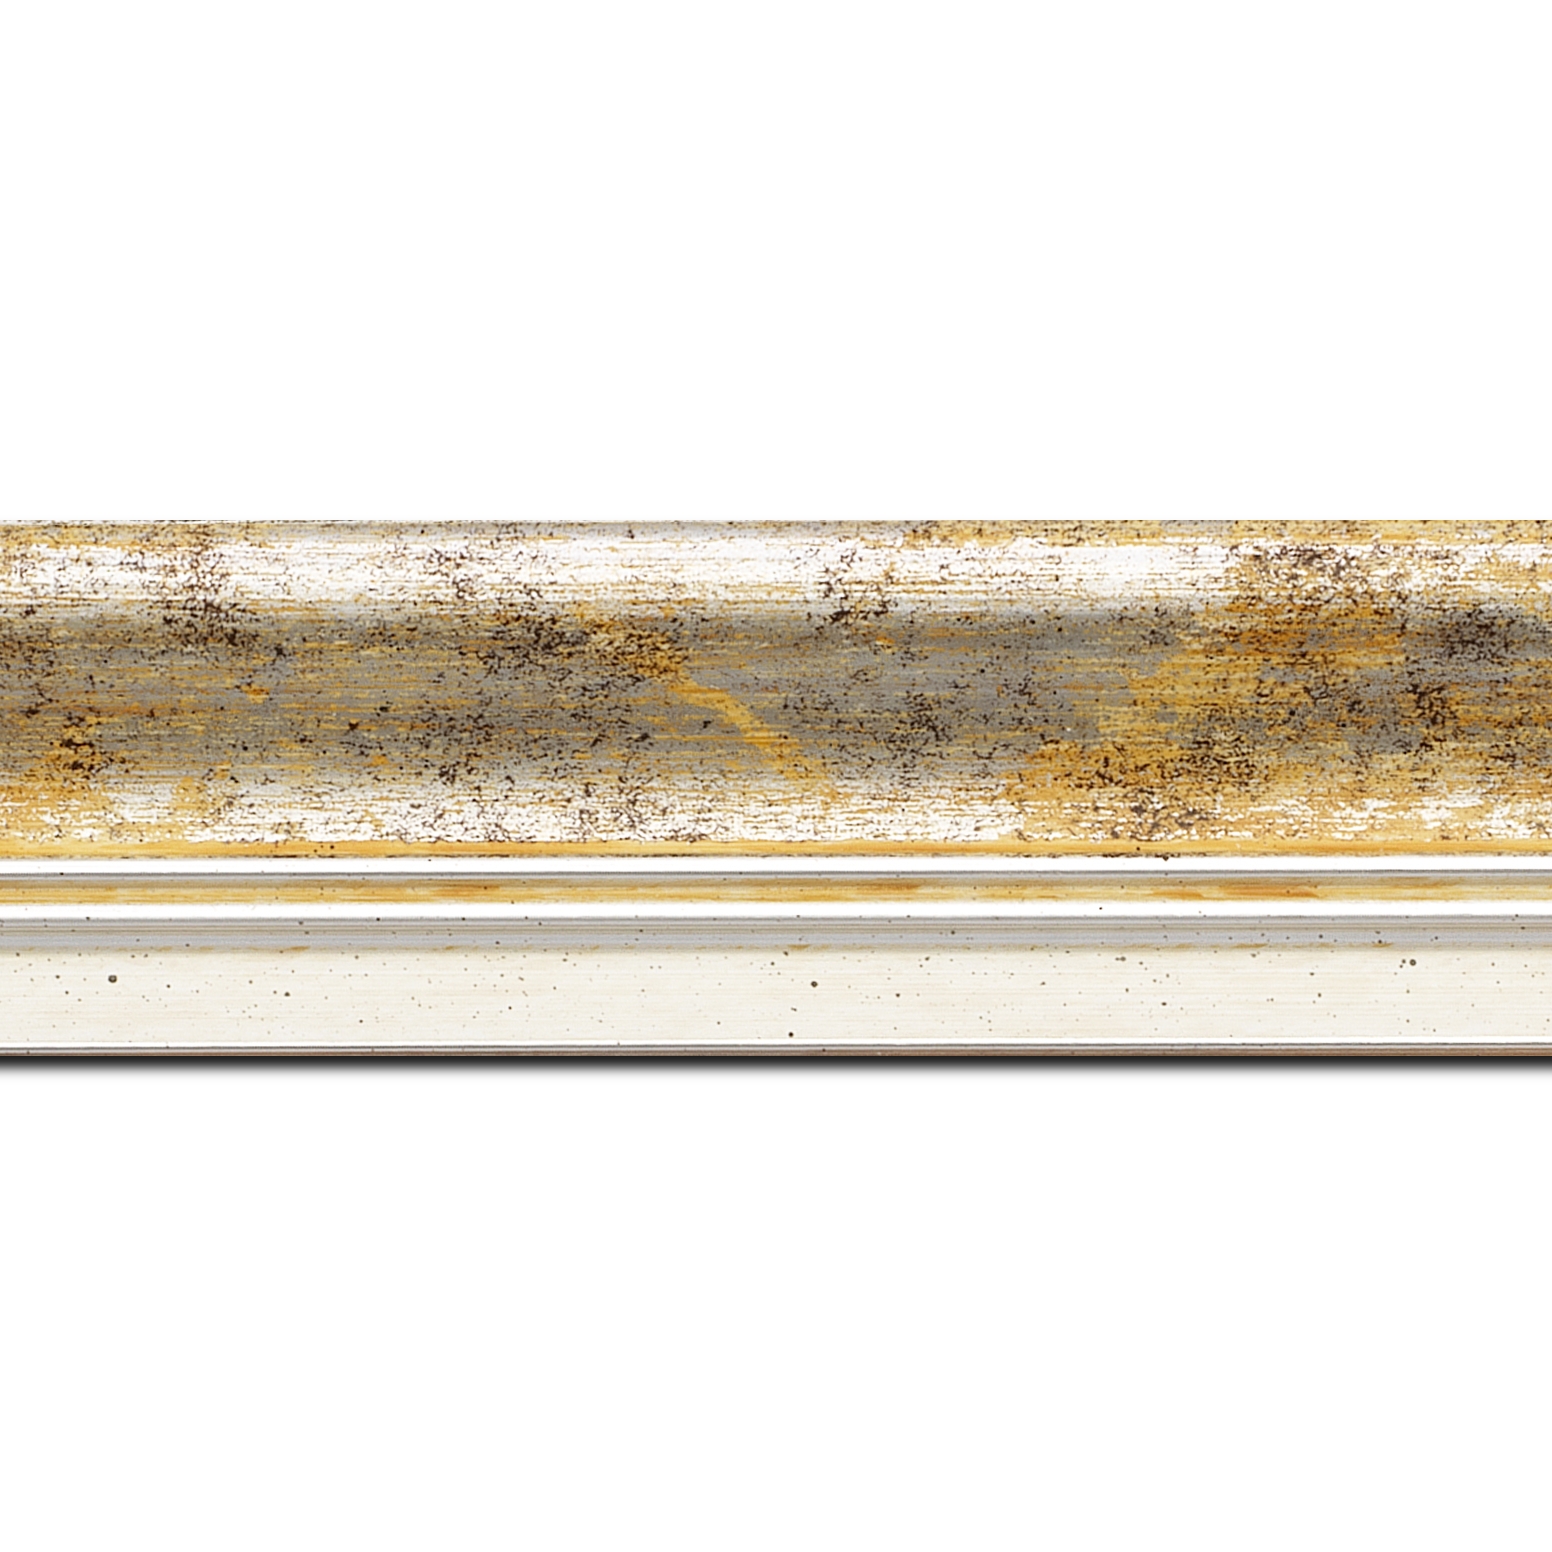 Baguette longueur 1.40m bois profil incurvé largeur 5.7cm de couleur jaune fond argent marie louise blanche mouchetée filet argent intégré